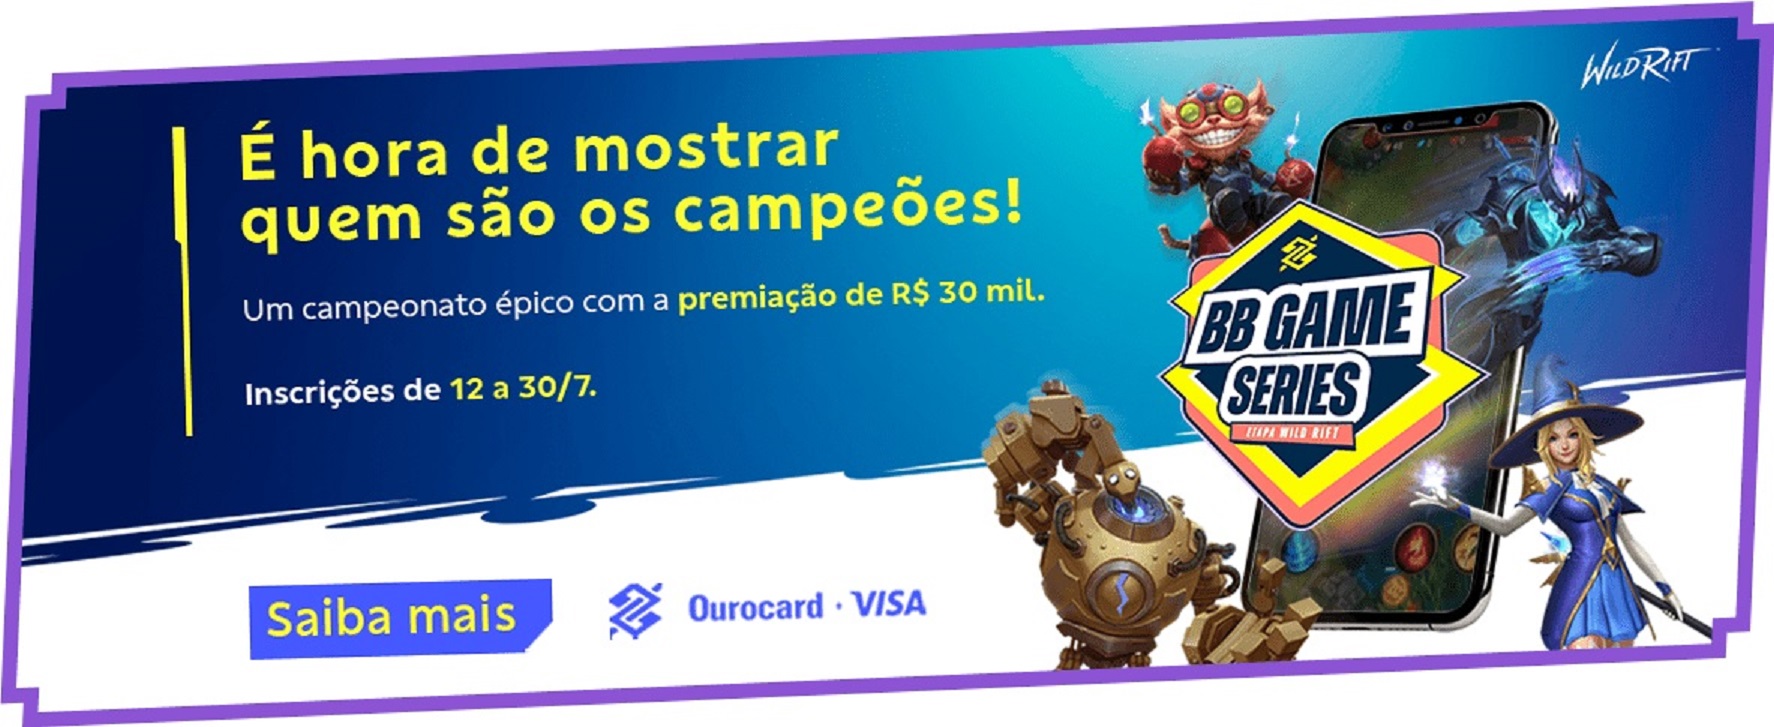 Banco do Brasil anuncia BB Game Series Etapa Wild Rift com R$ 30 mil em  premiação - Critical Hits